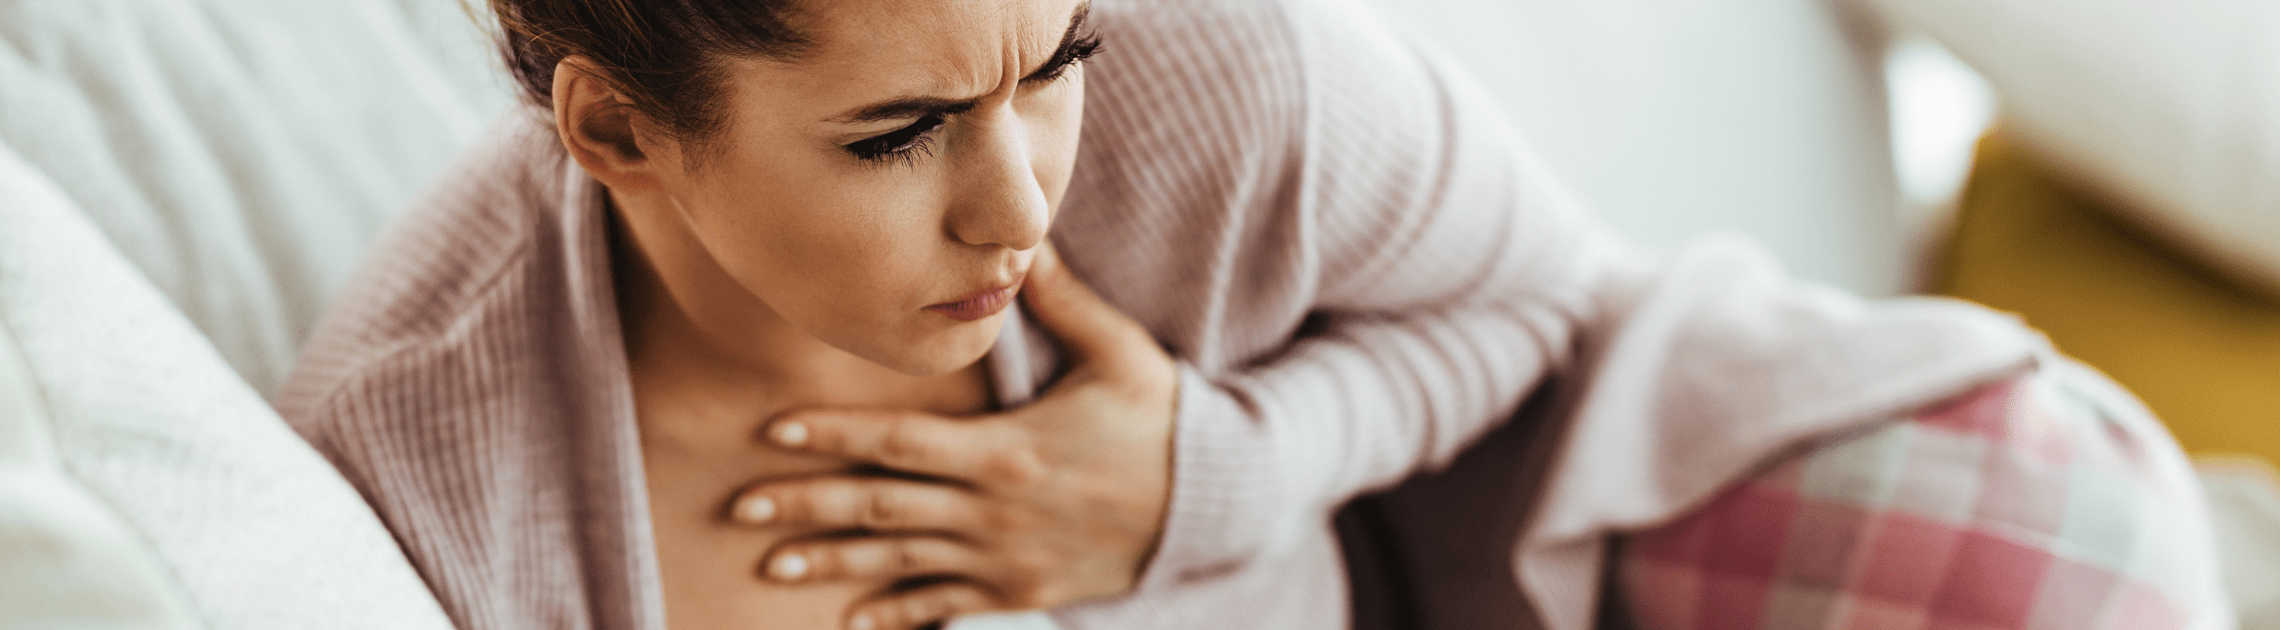 mujer sufriendo tos de pecho